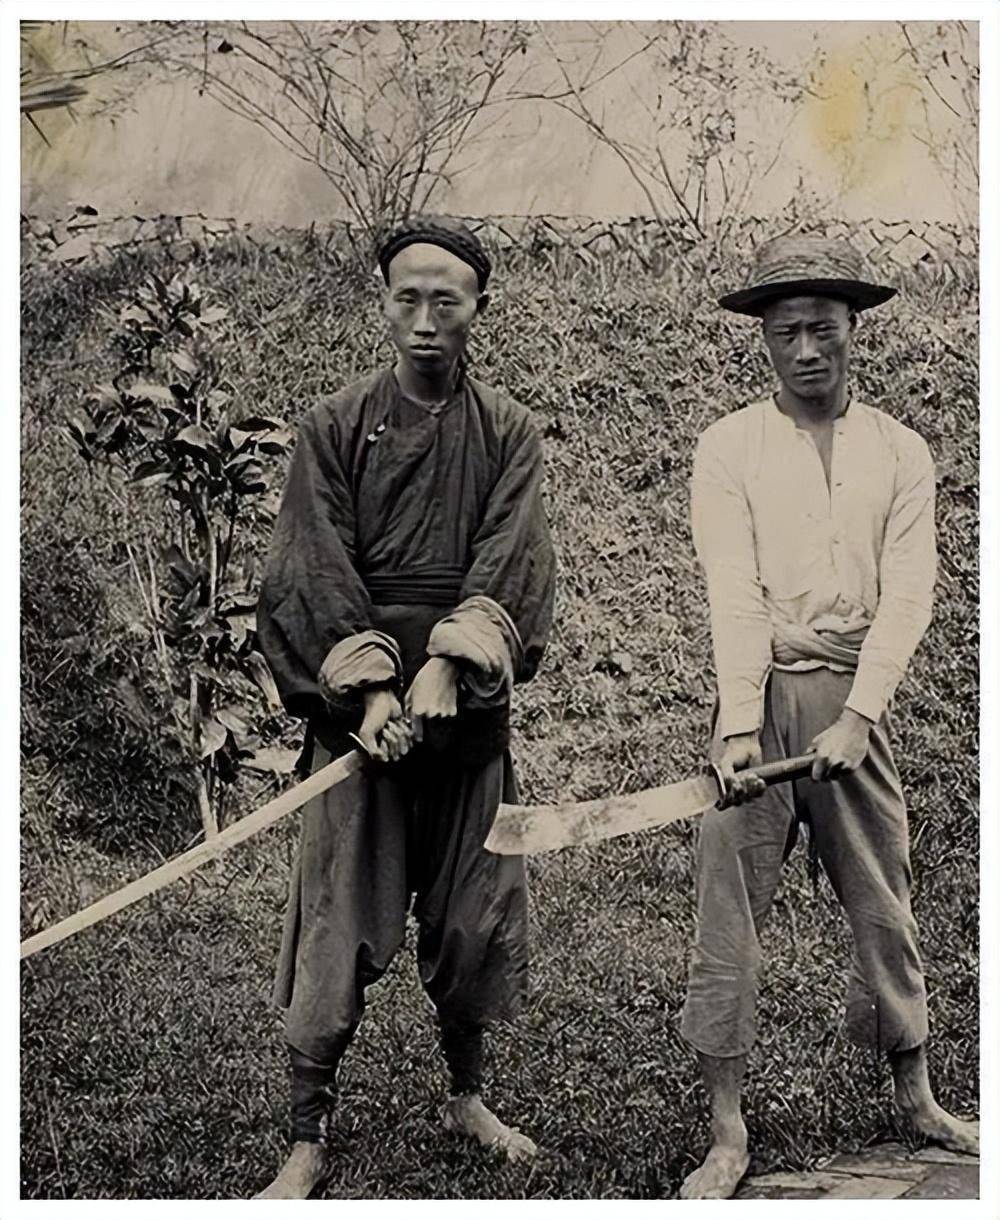 清朝最后一位刽子手邓海山,一生砍了300多个脑袋,晚年终遭报应